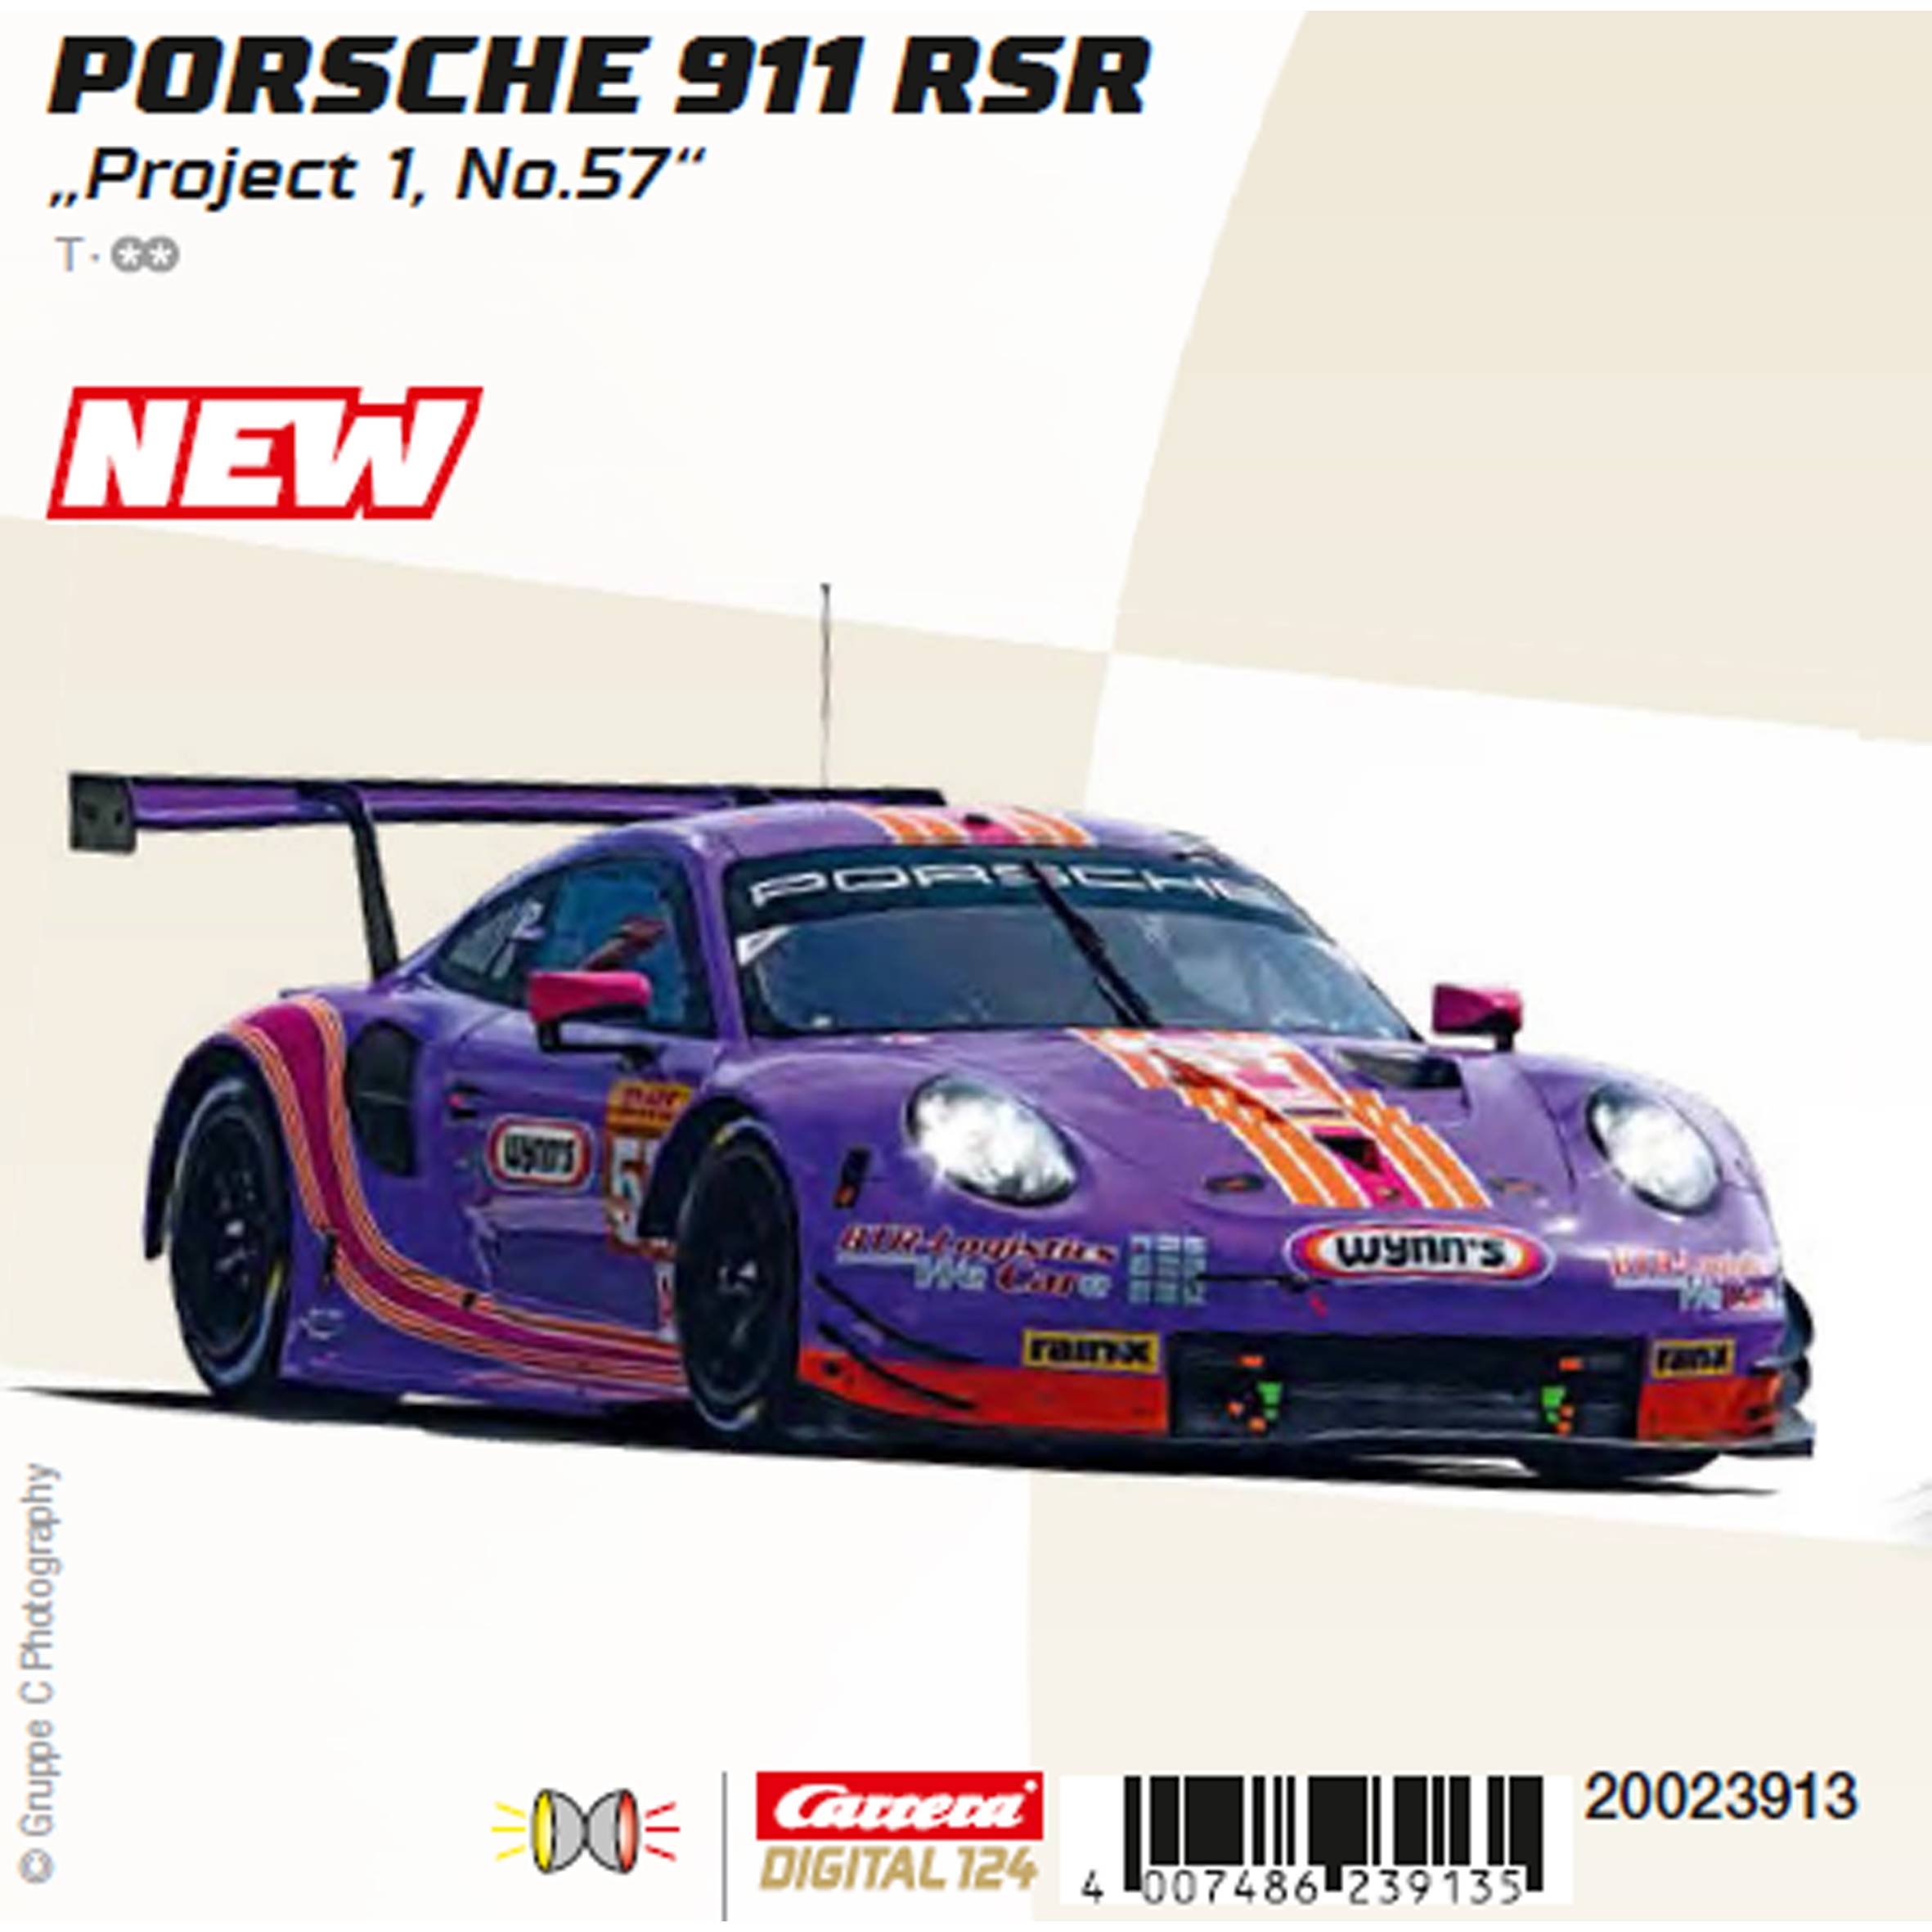 Porsche 911 Zubehör Katalog im Mai 2012 als Druckausgabe : Autoliteratur  Höpel